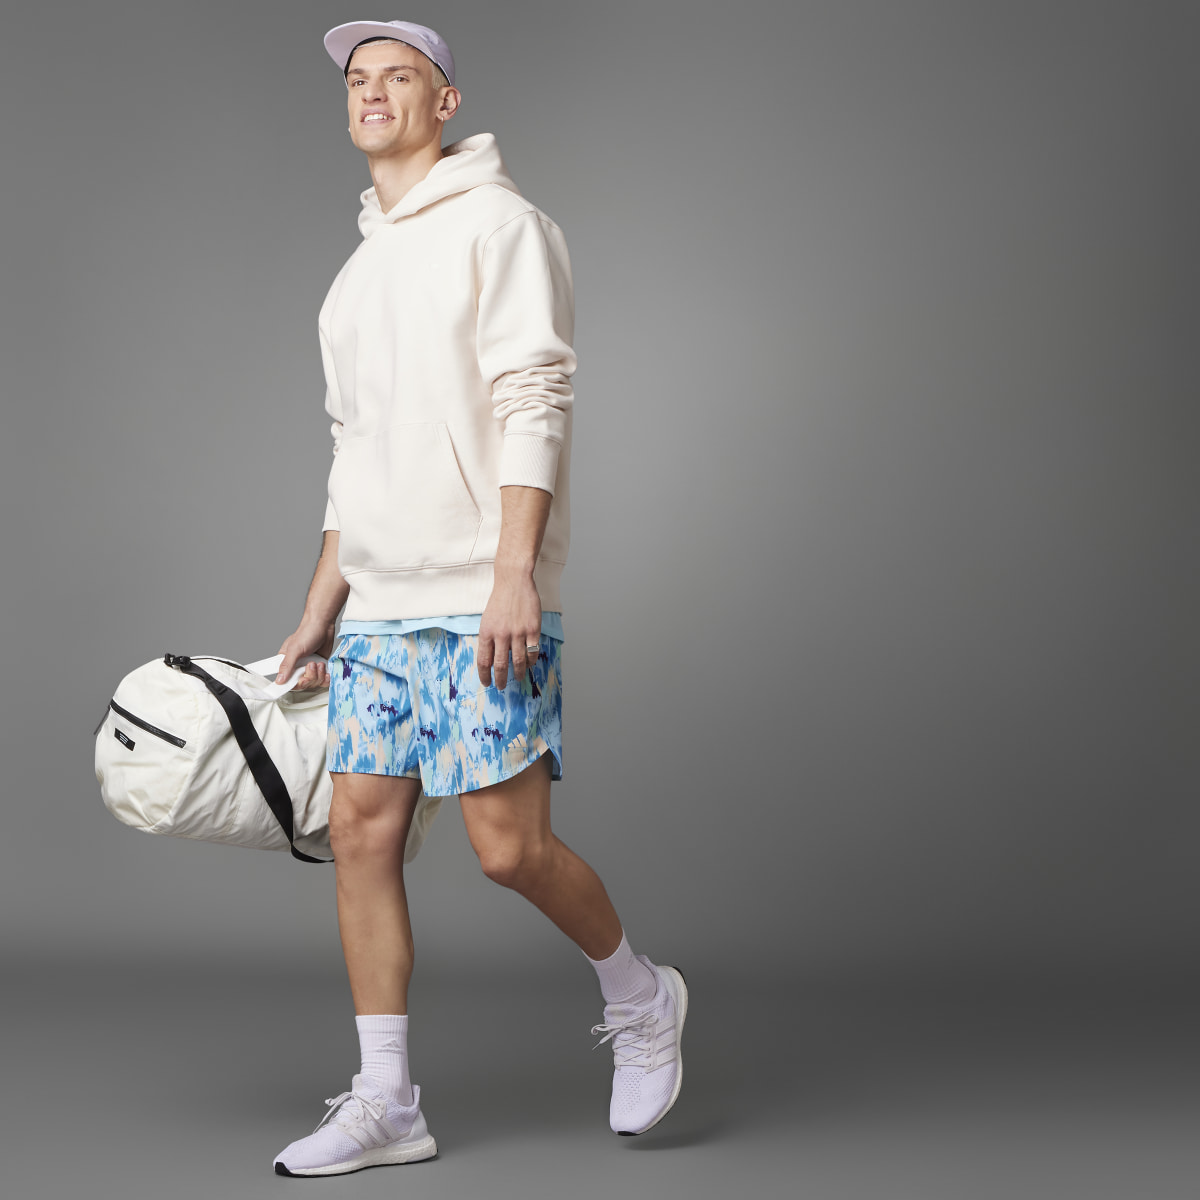 Adidas Shorts Training Lift Your Mind Designed. 4